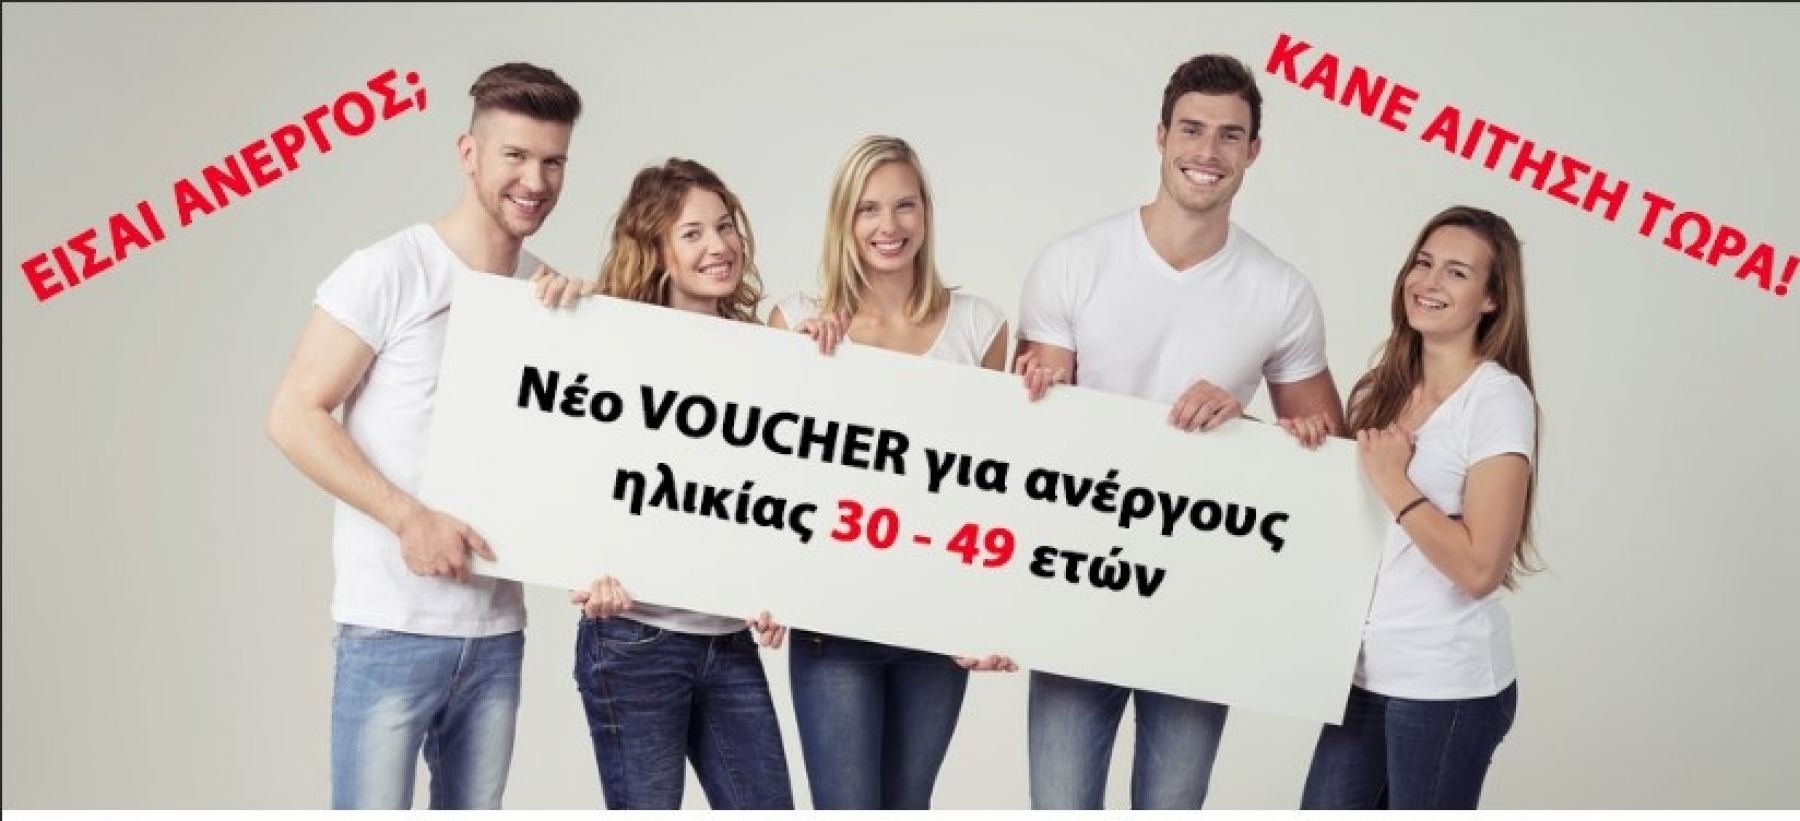 Είσαι άνεργος ηλικίας 30-49 ετών; Μάθε για το νέο Voucher με επιδότηση 2.520€ !!!